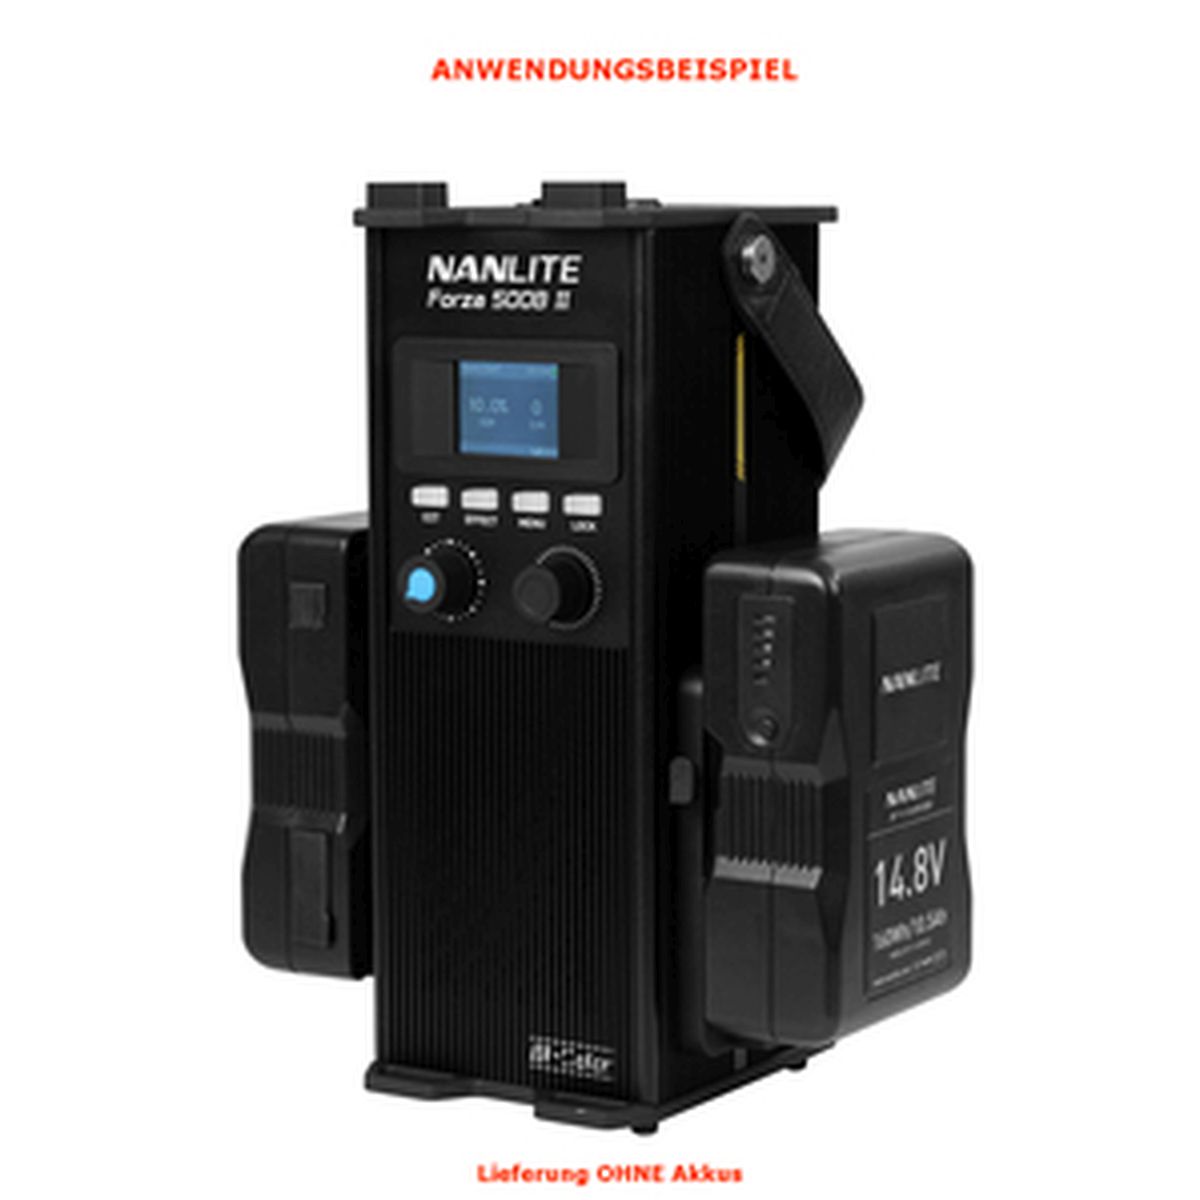 Nanlite FORZA 500B II KIT Reportage- und Studio-Scheinwerfer